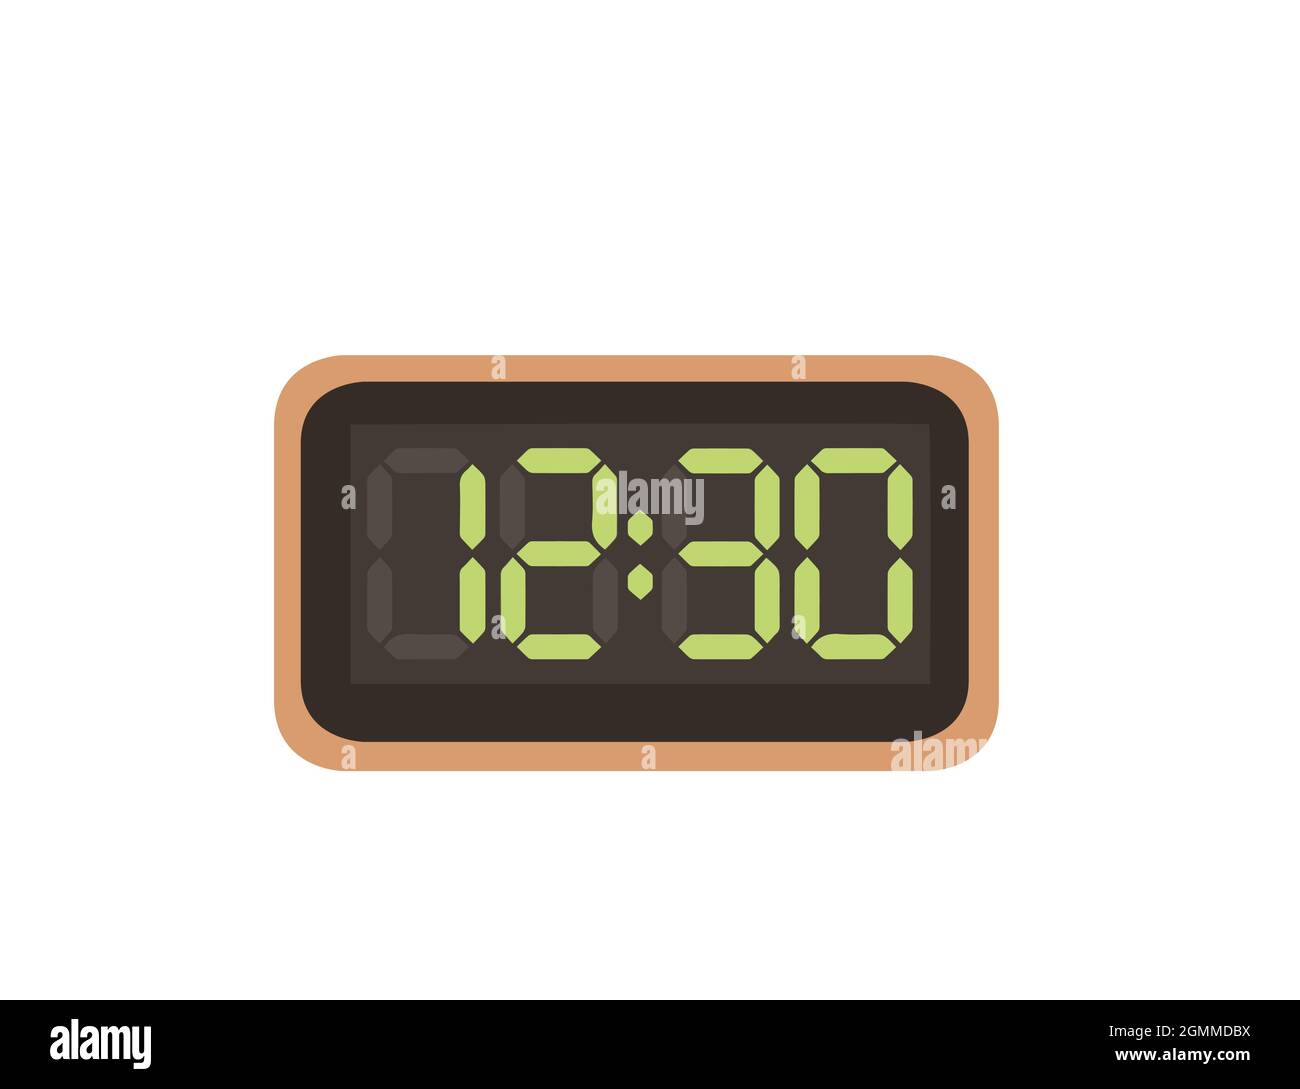 Digitale Uhrzeit auf weißem Hintergrund Vector Illustration  Stock-Vektorgrafik - Alamy